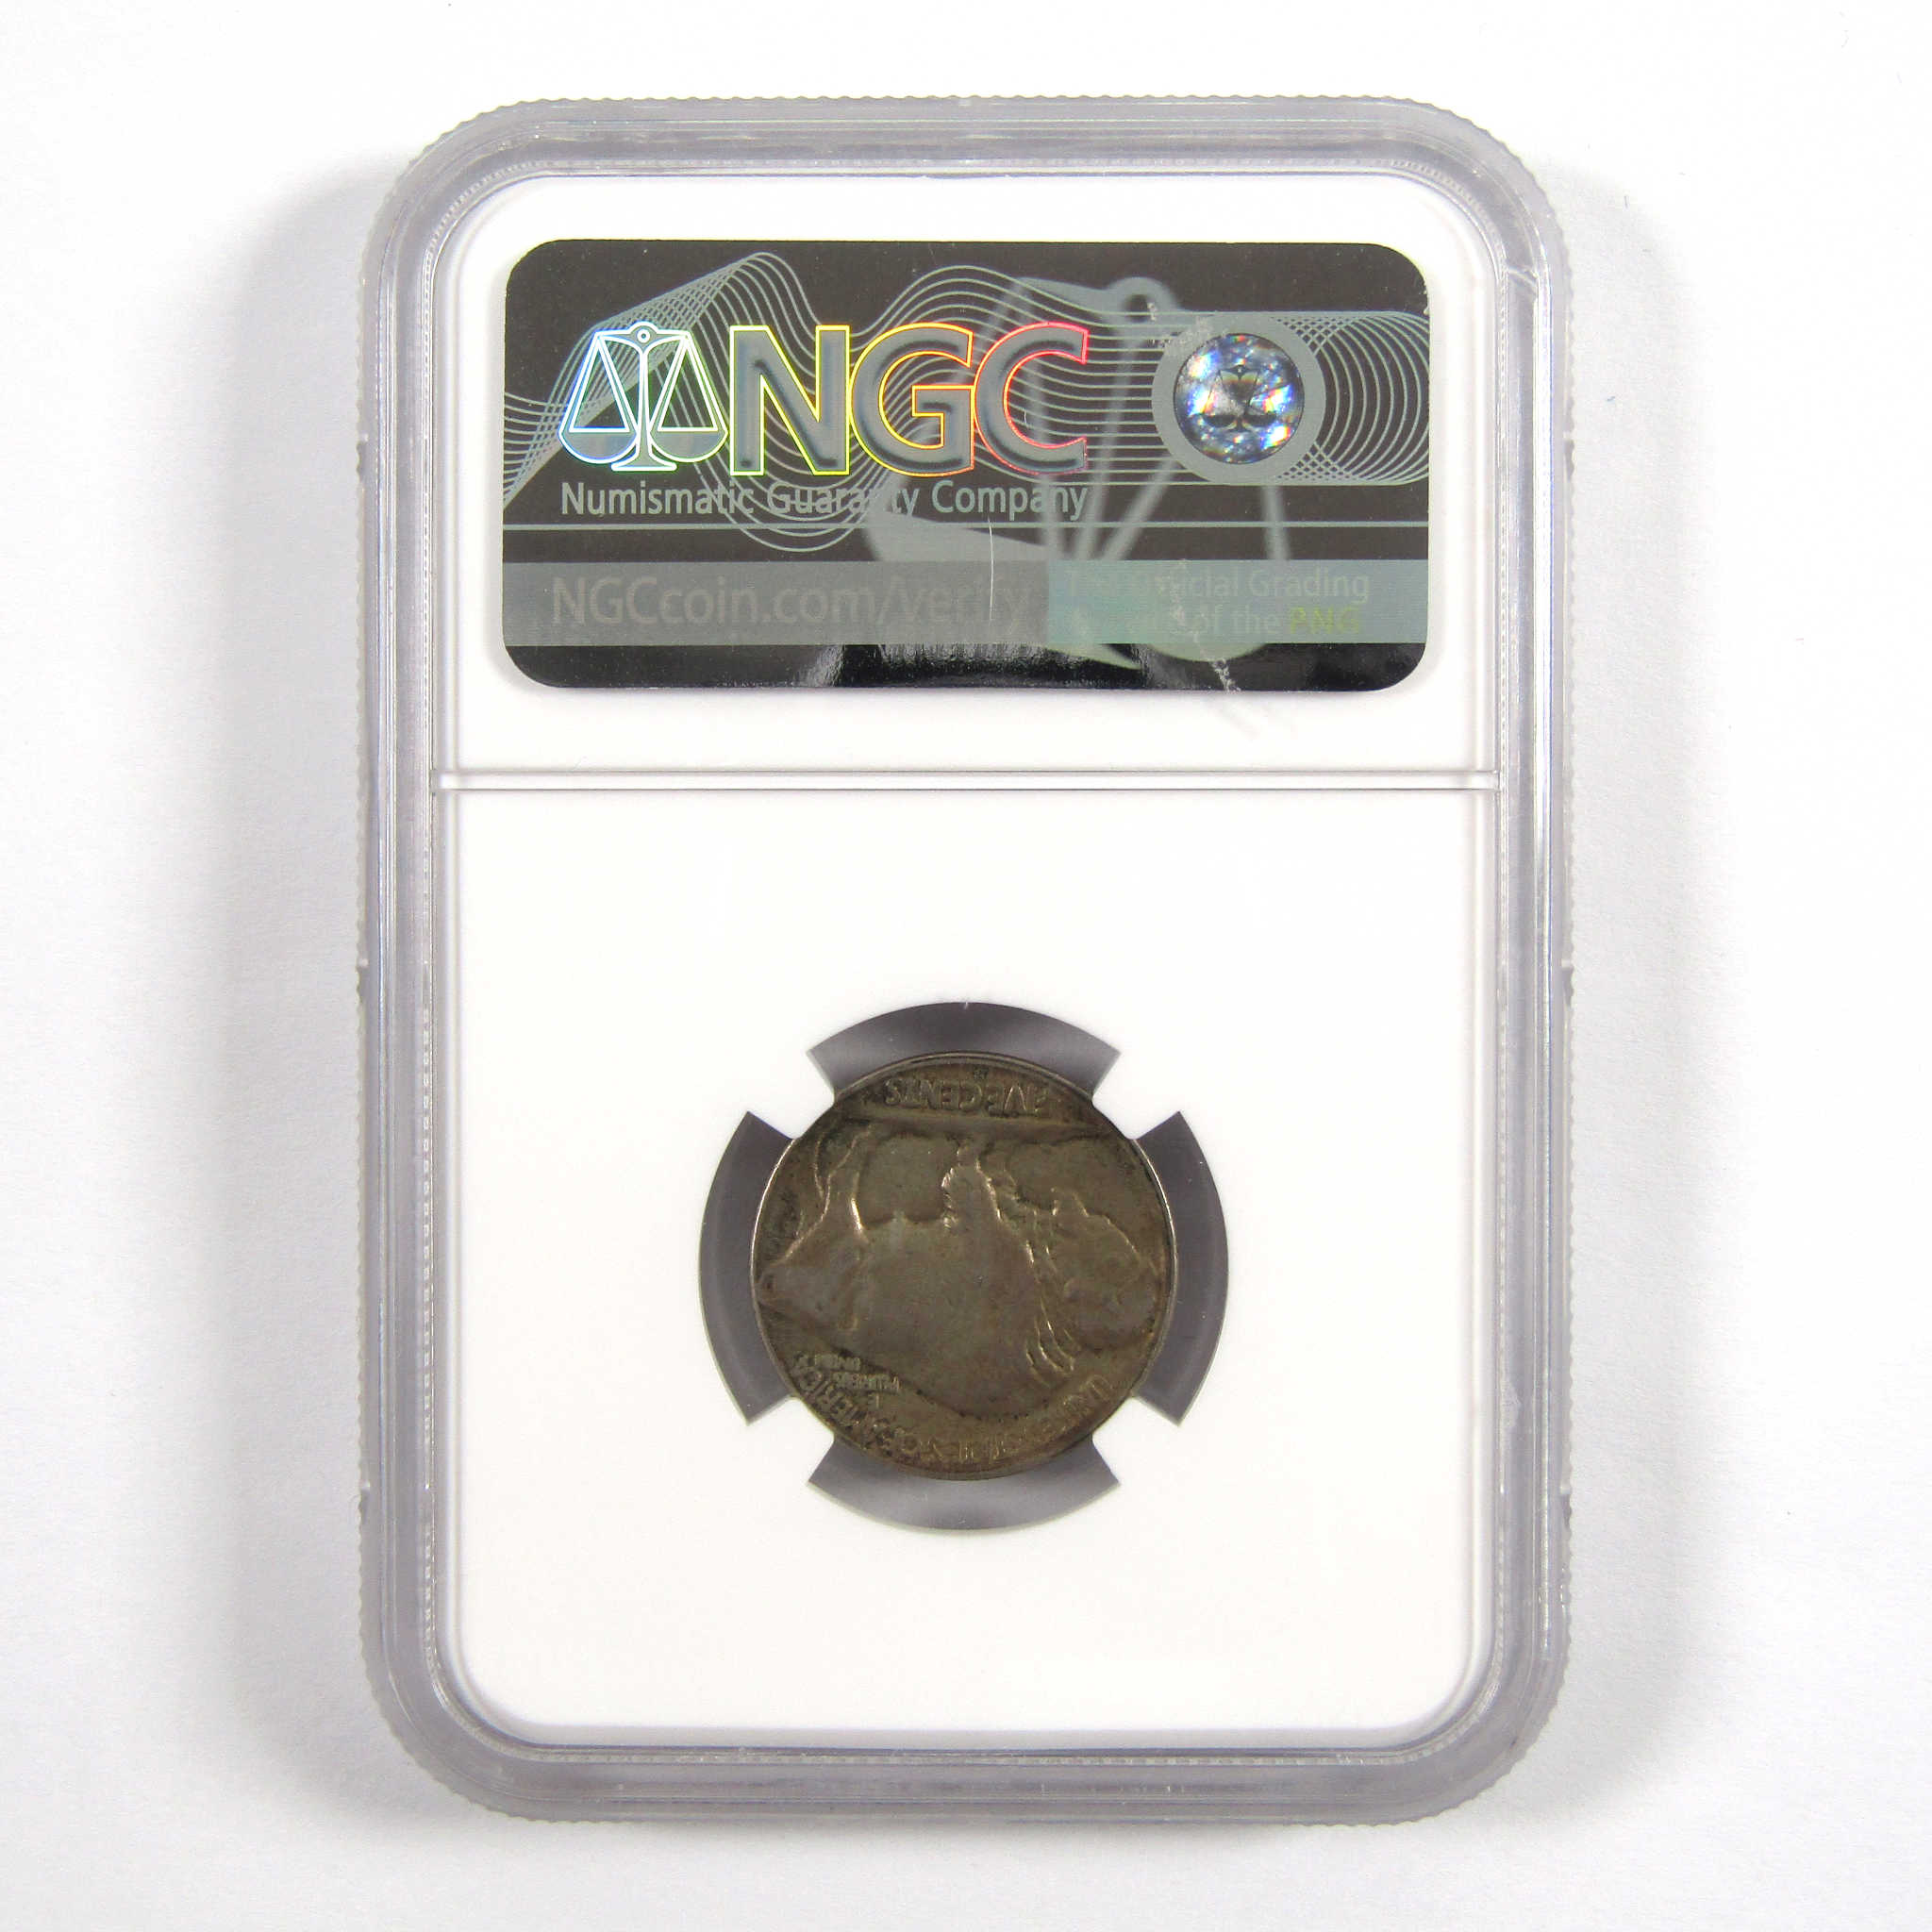 1919 S Indian Head Buffalo Nickel AU 55 NGC 5c Coin SKU:I11056